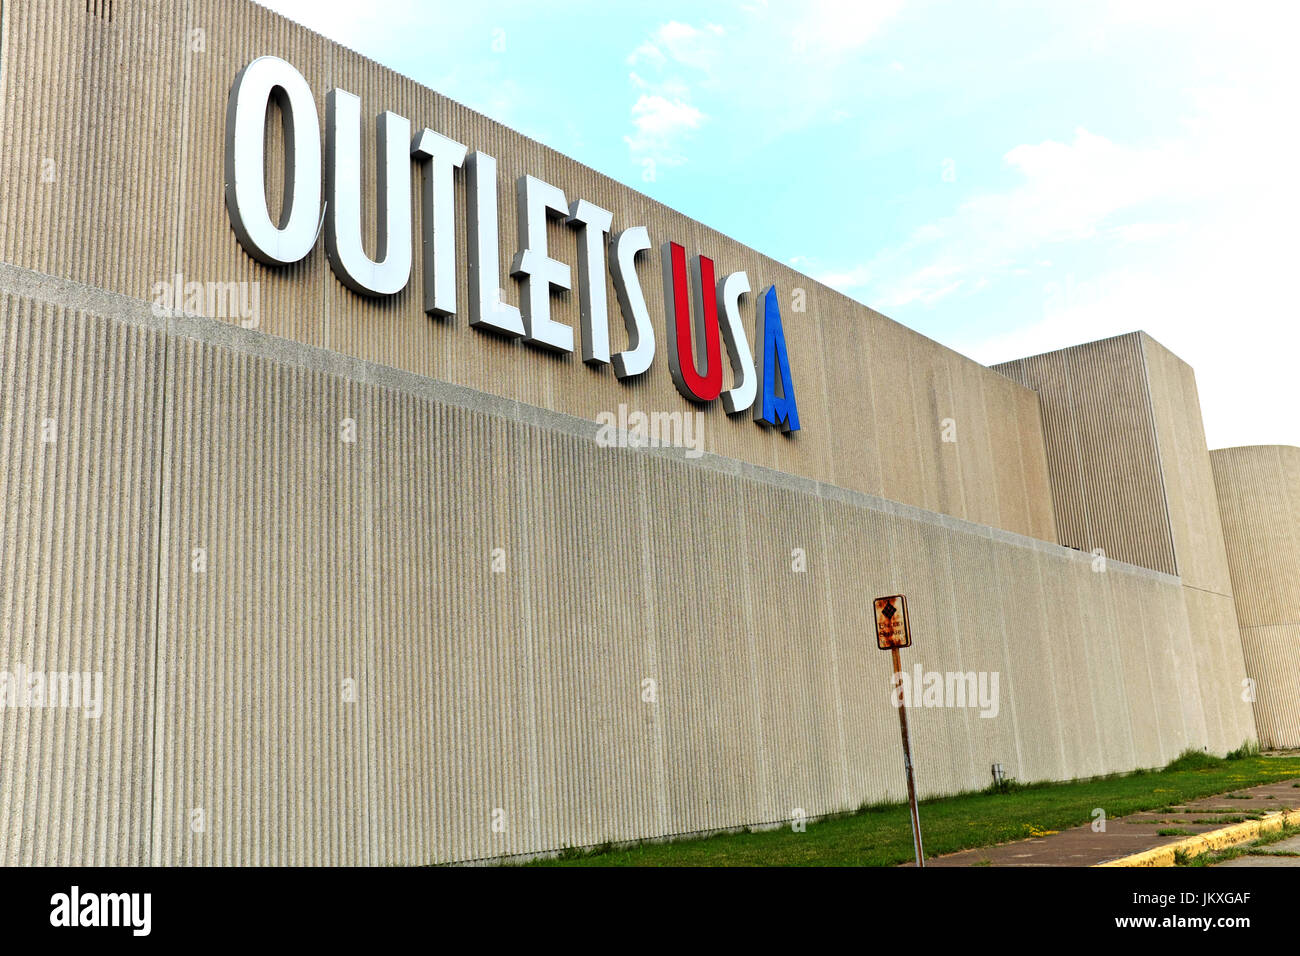 Steckdosen usa in Euklid, Ohio ist das einzige kommerzielle Steckdose in  Euclid Square Mall, bald abgerissen werden Weg für ein Amazon distribution  center zu machen Stockfotografie - Alamy